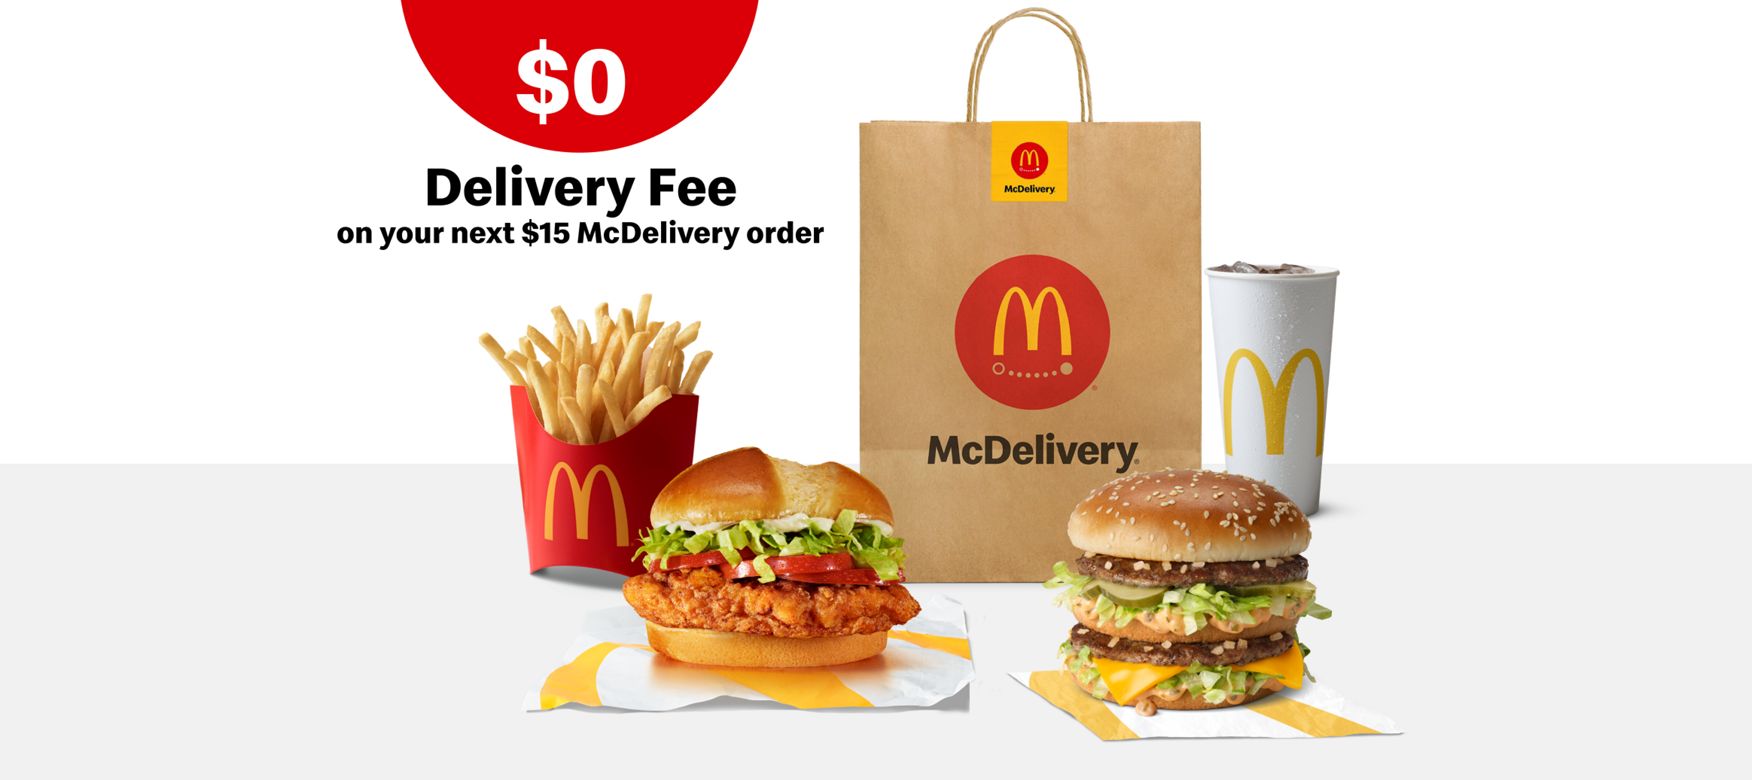 Download the McDonald's App: Deals, Promotions & Rewards